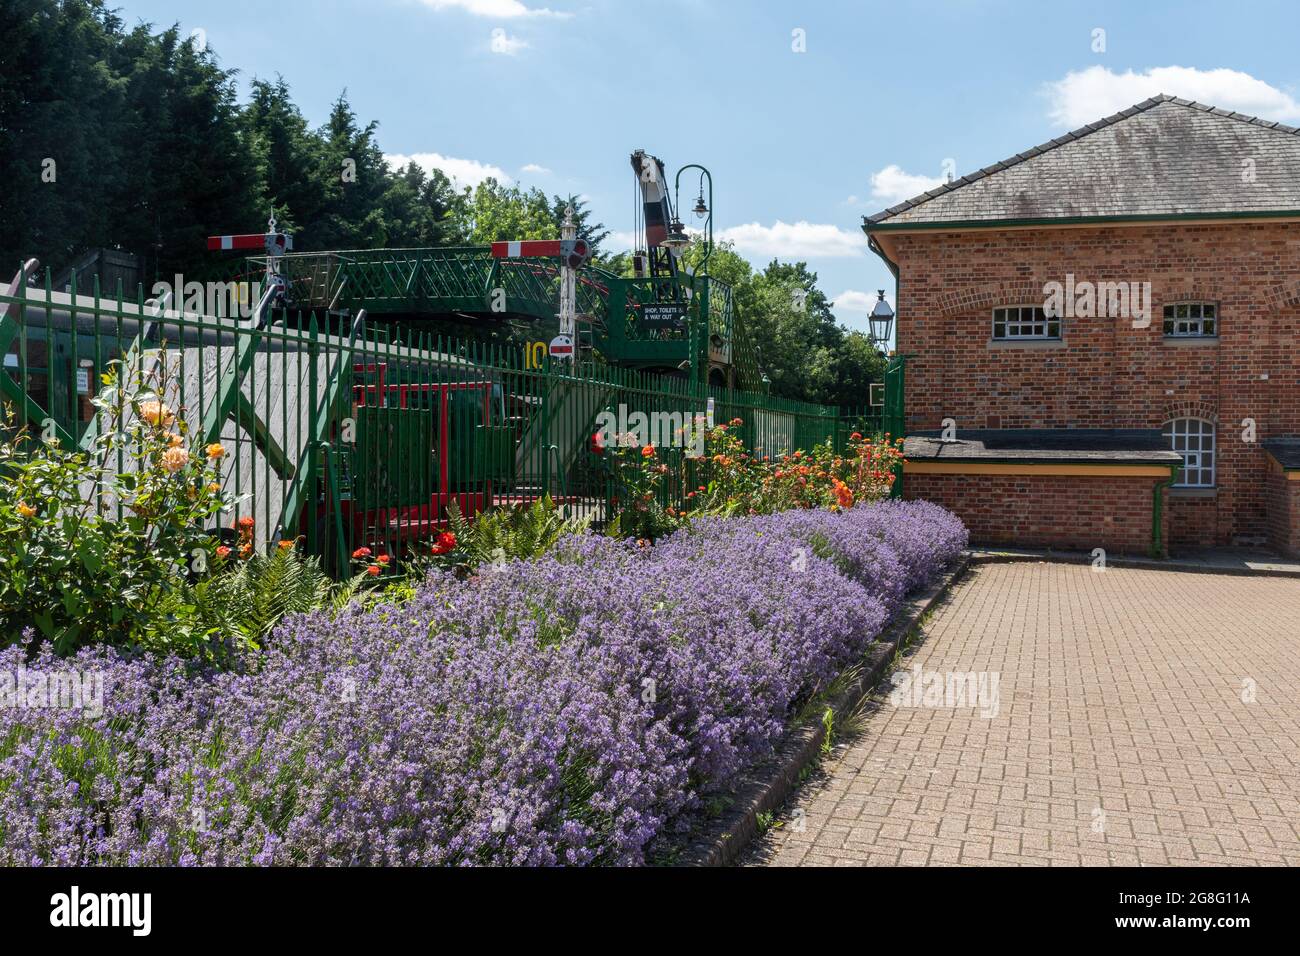 Vue d'été sur la gare d'Alresford. Le chemin de fer à vapeur Watercress Line est une attraction populaire à Alresford, Hampshire, Angleterre, Royaume-Uni. Banque D'Images